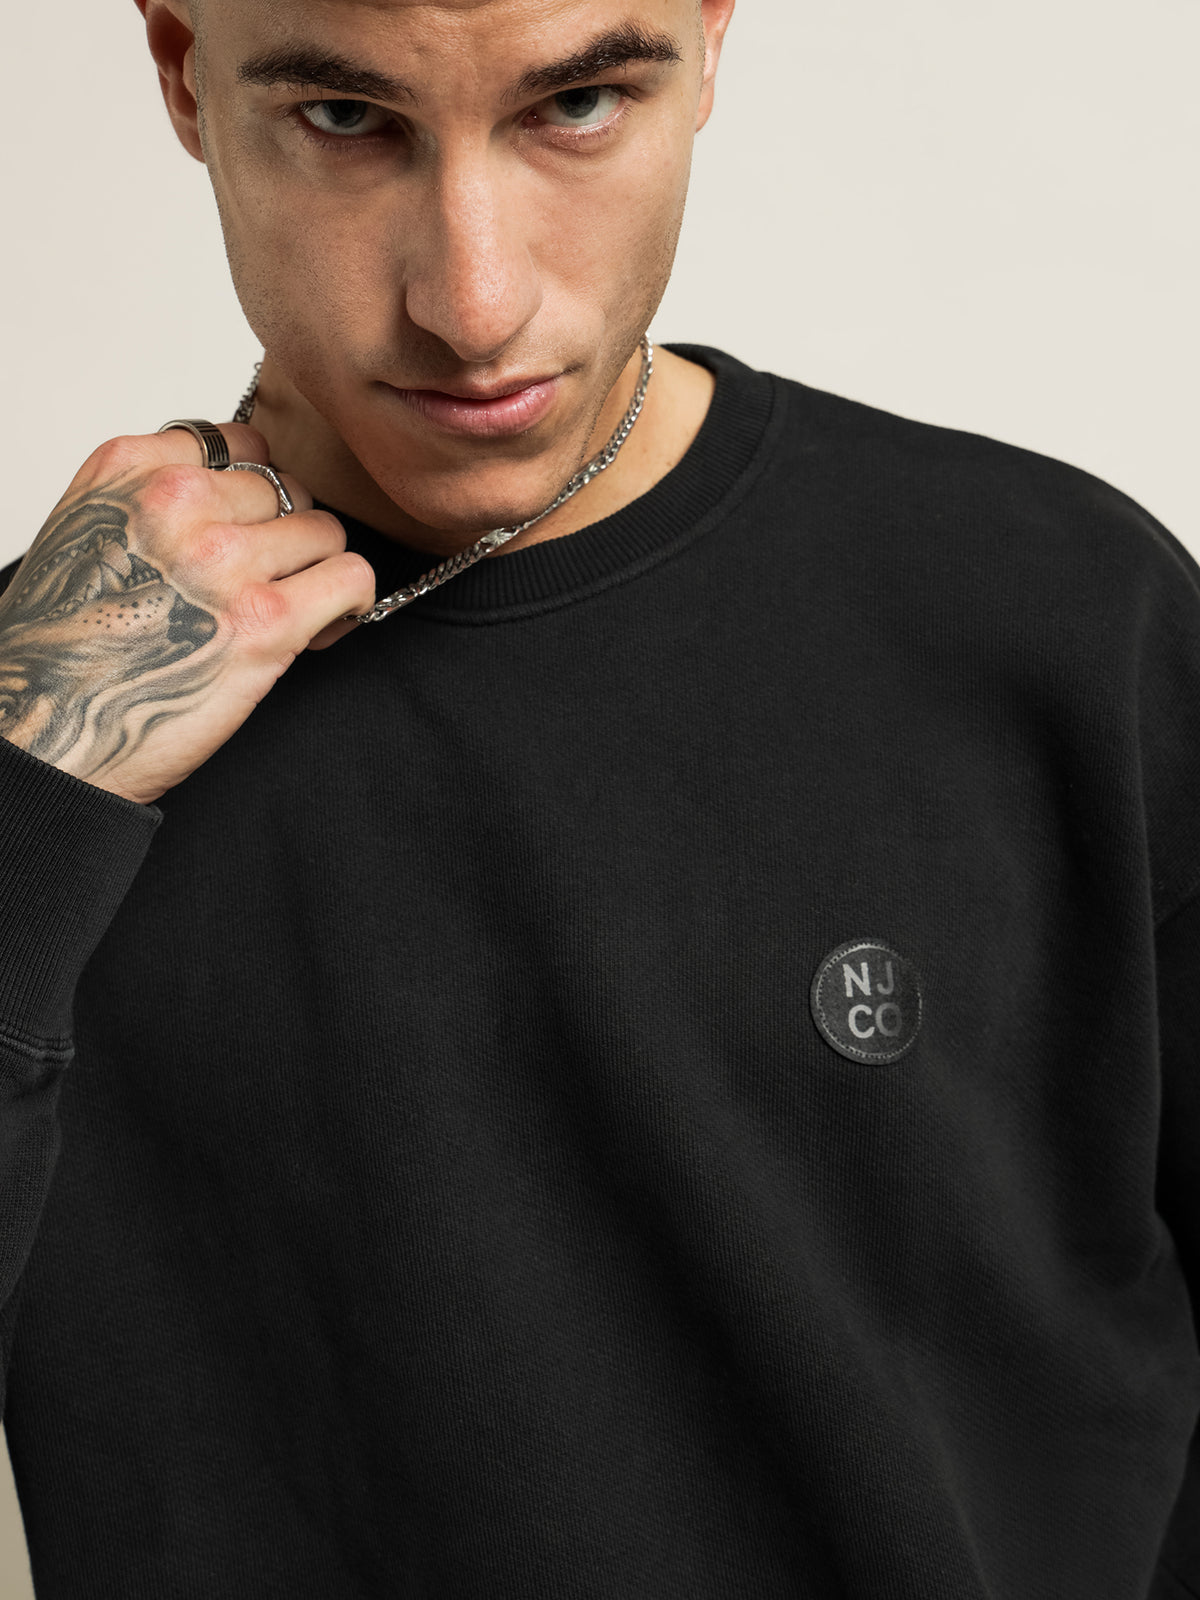 Lukas NJCO Circle Sweatshirt in Black